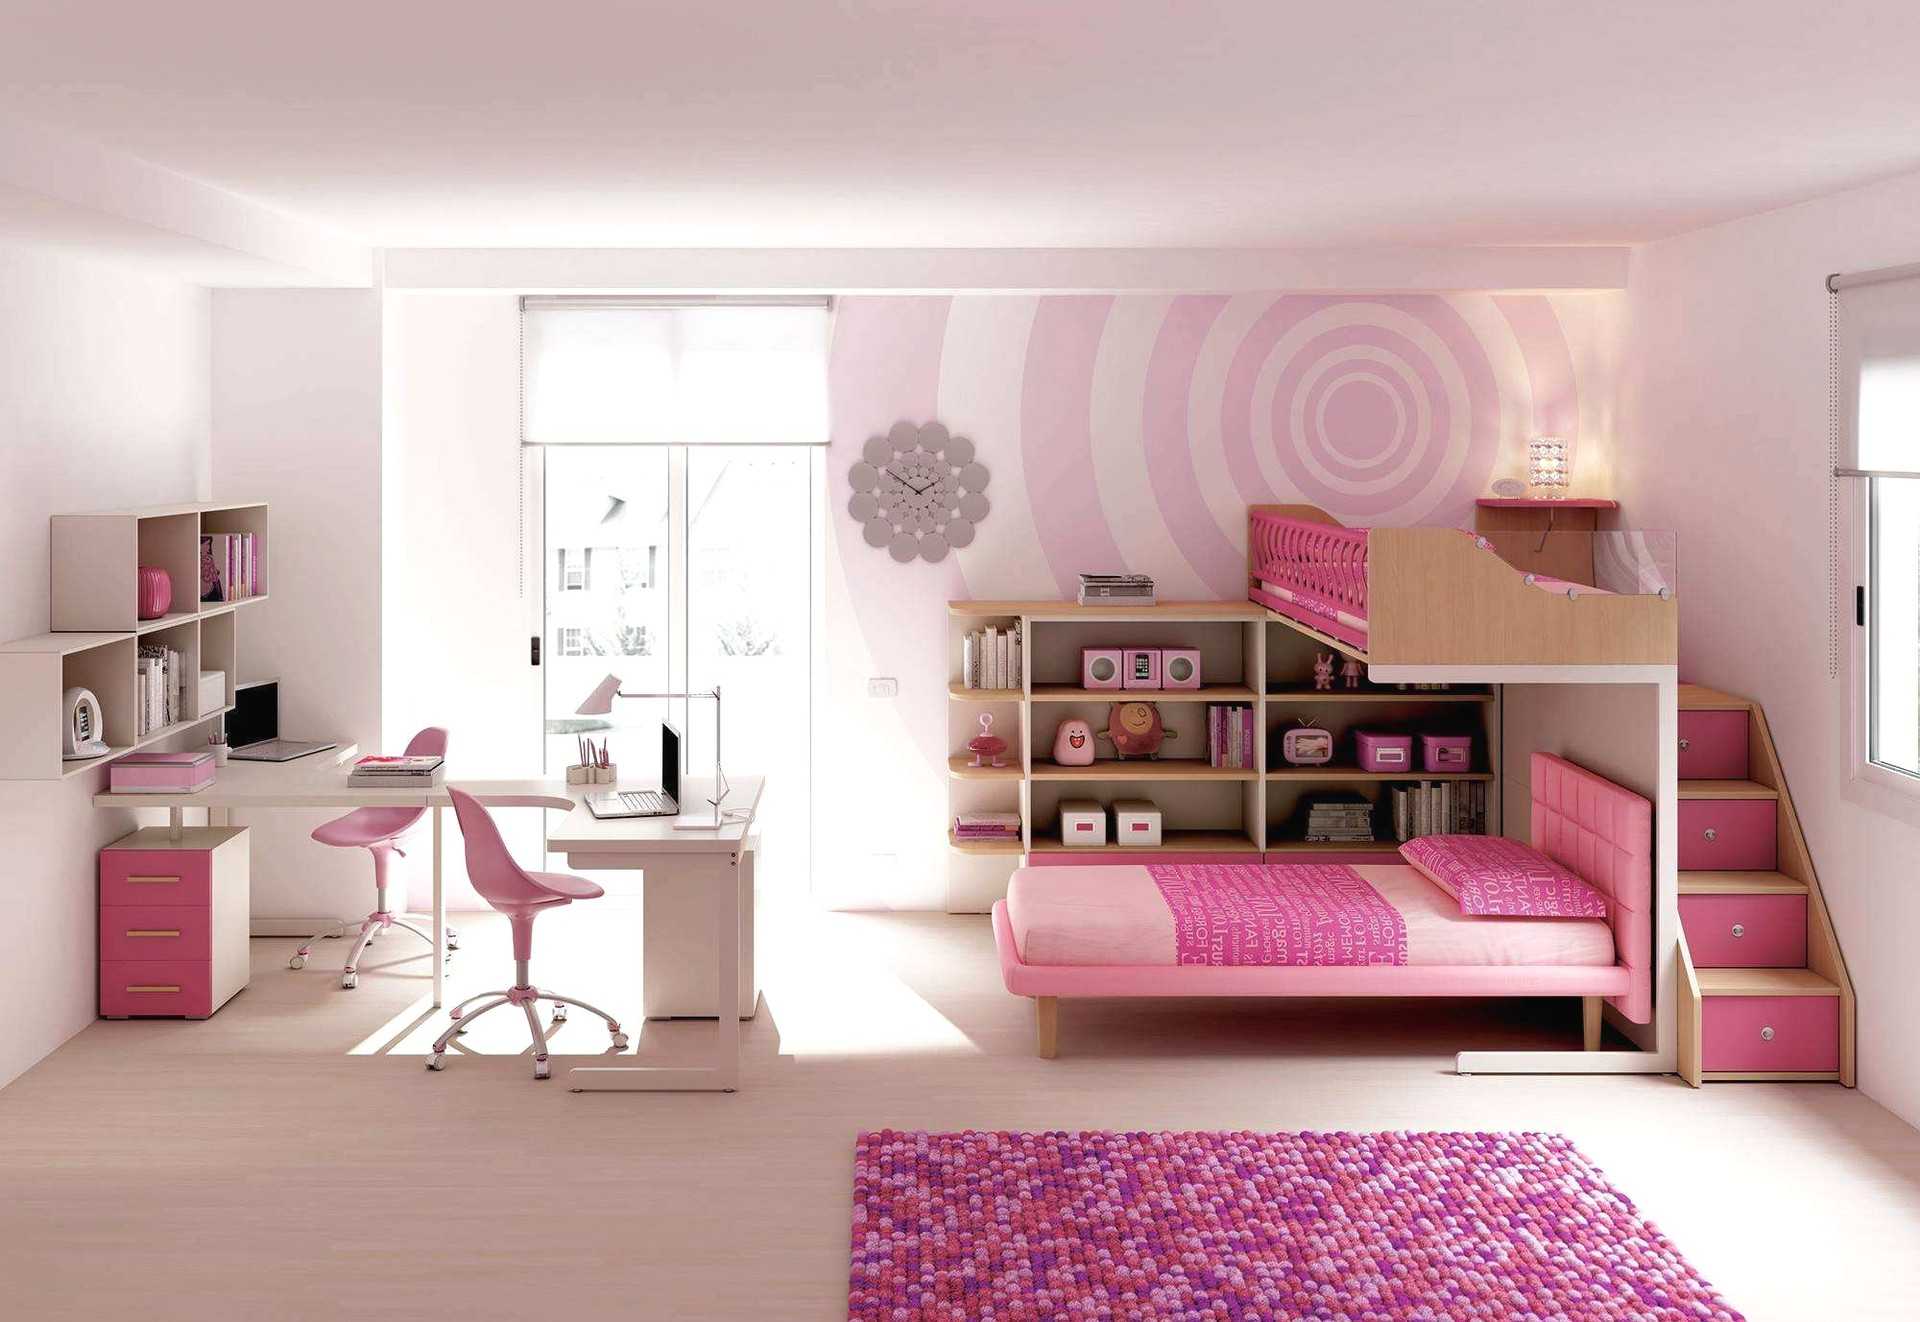 Обои для мальчика-подростка (67 фото): дизайн детской комнаты ребенка 14 или 15 лет, цвет стен в спальне 16-летнего подростка